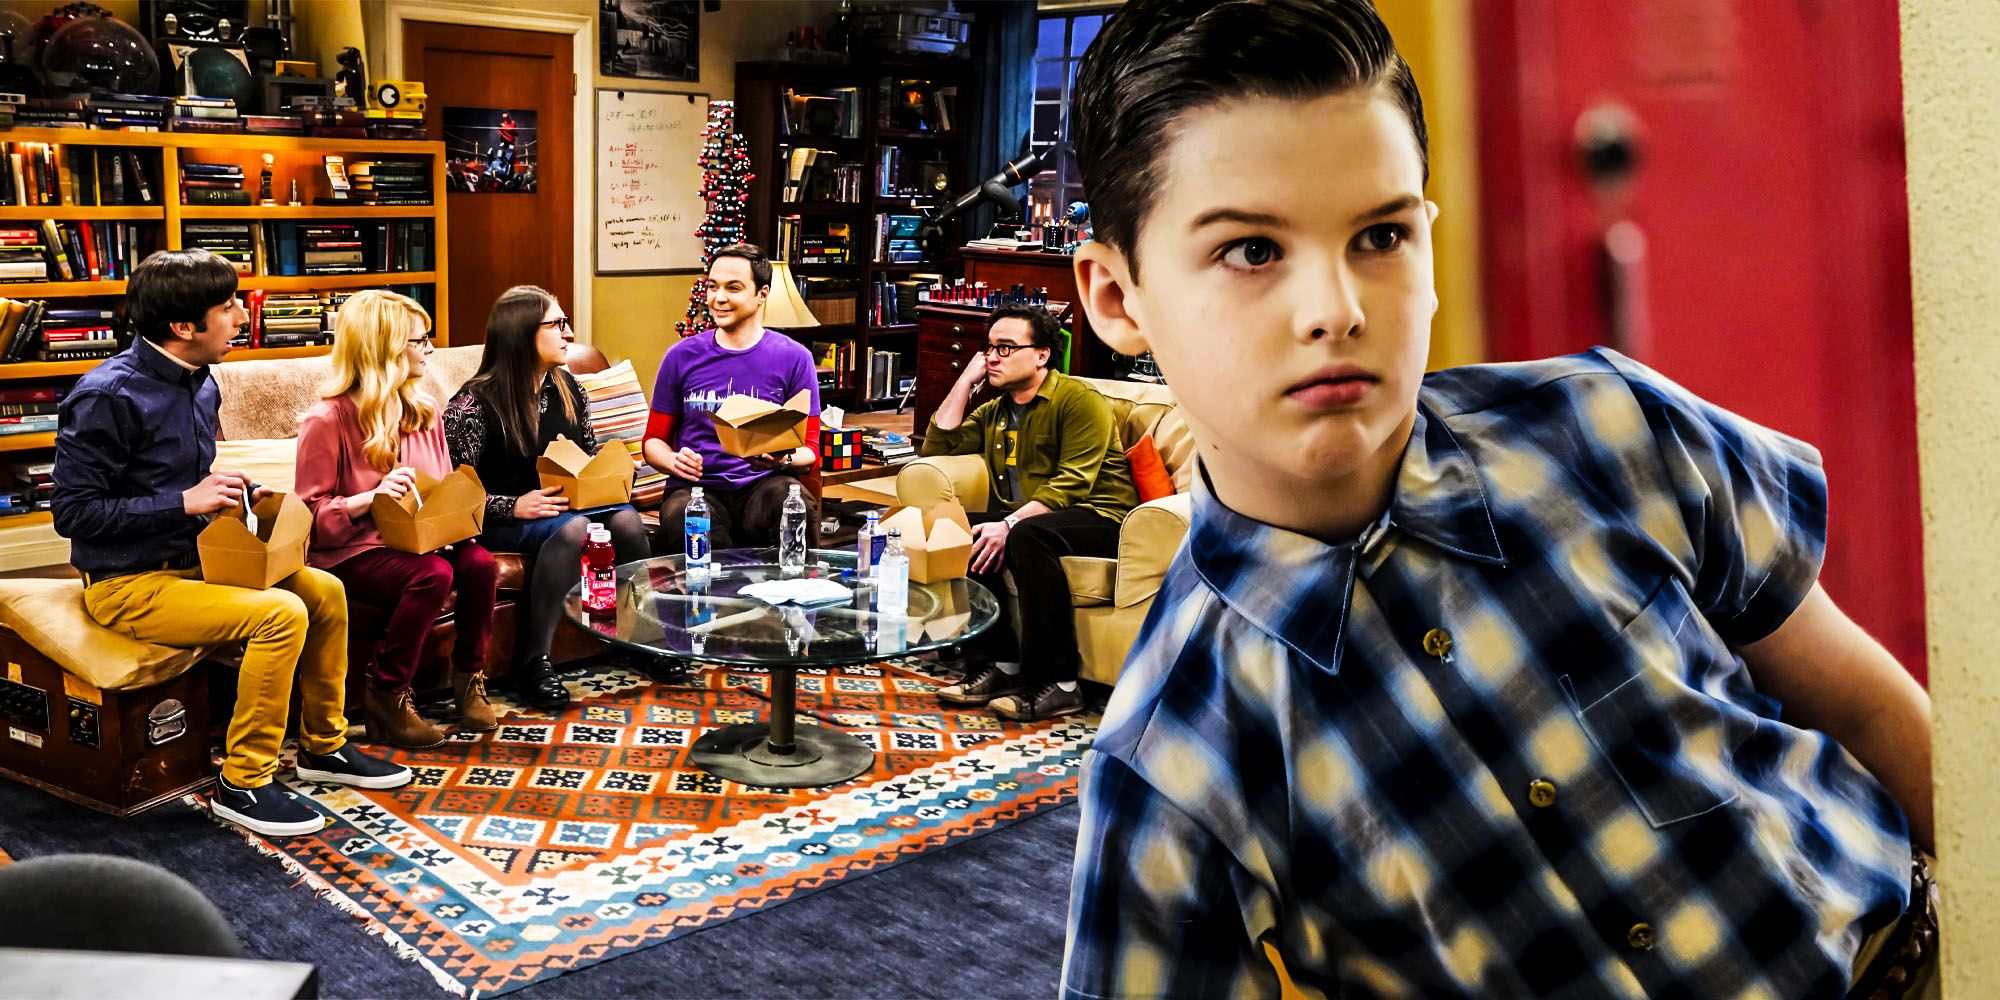 El personaje que regresa de la teoría del Big Bang del joven Sheldon solo empeorará su agujero en la trama